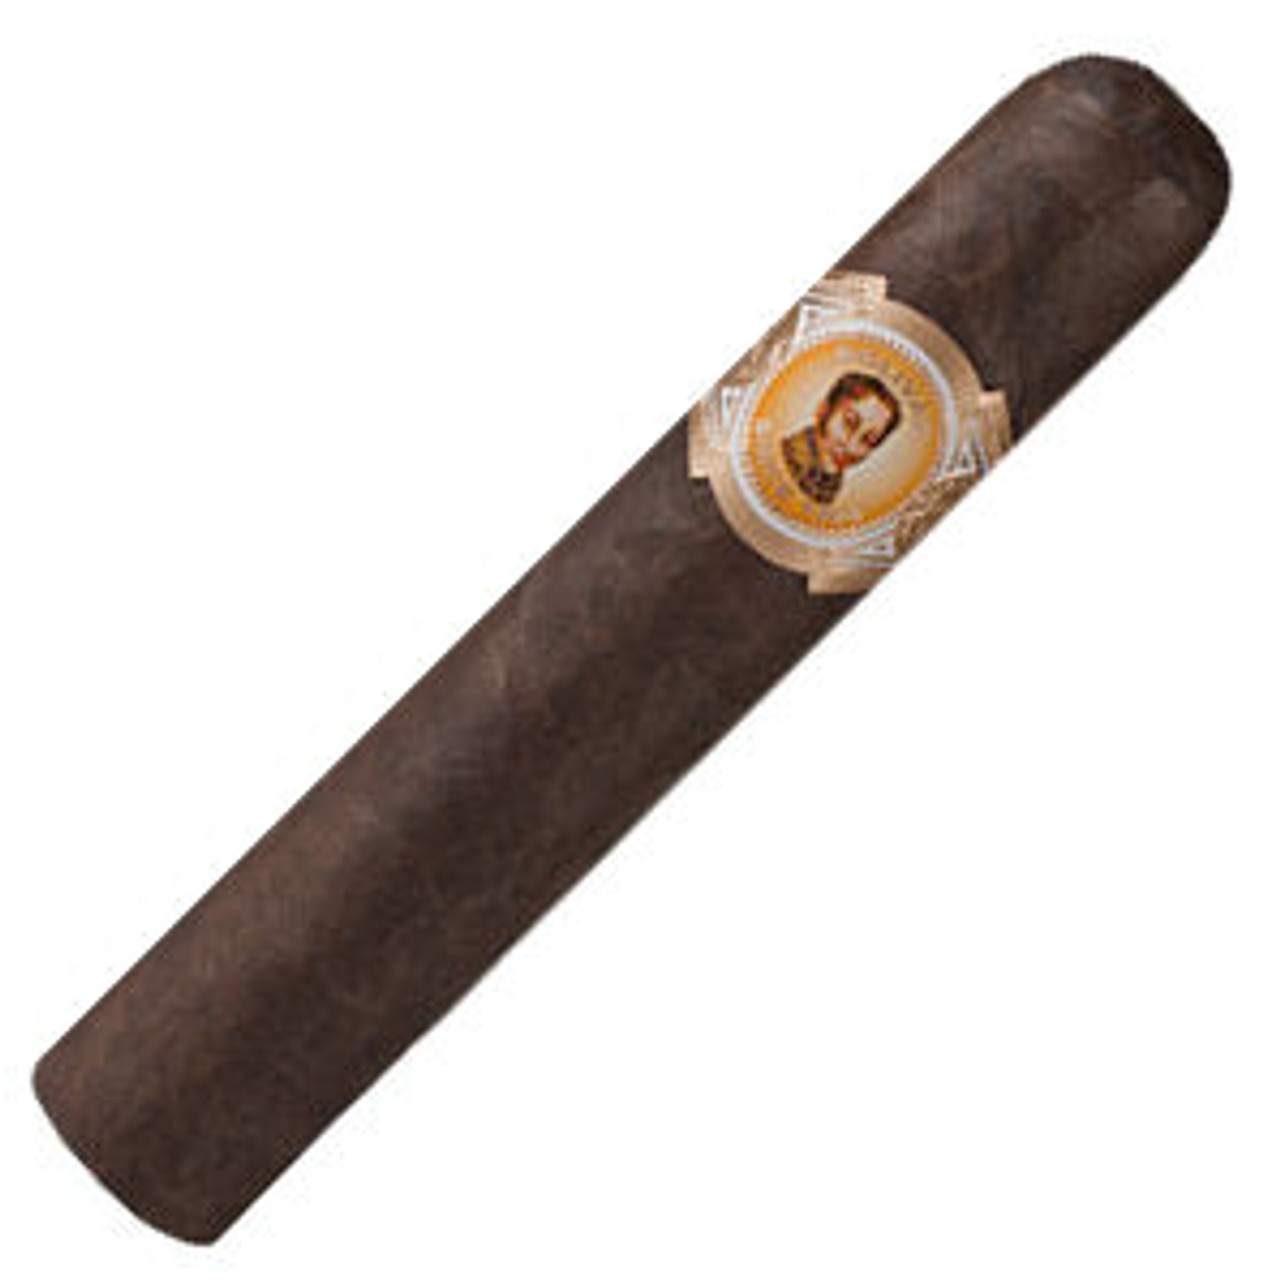 Bolivar Cofradia No. 554 Cigars - 5 x 54 Single